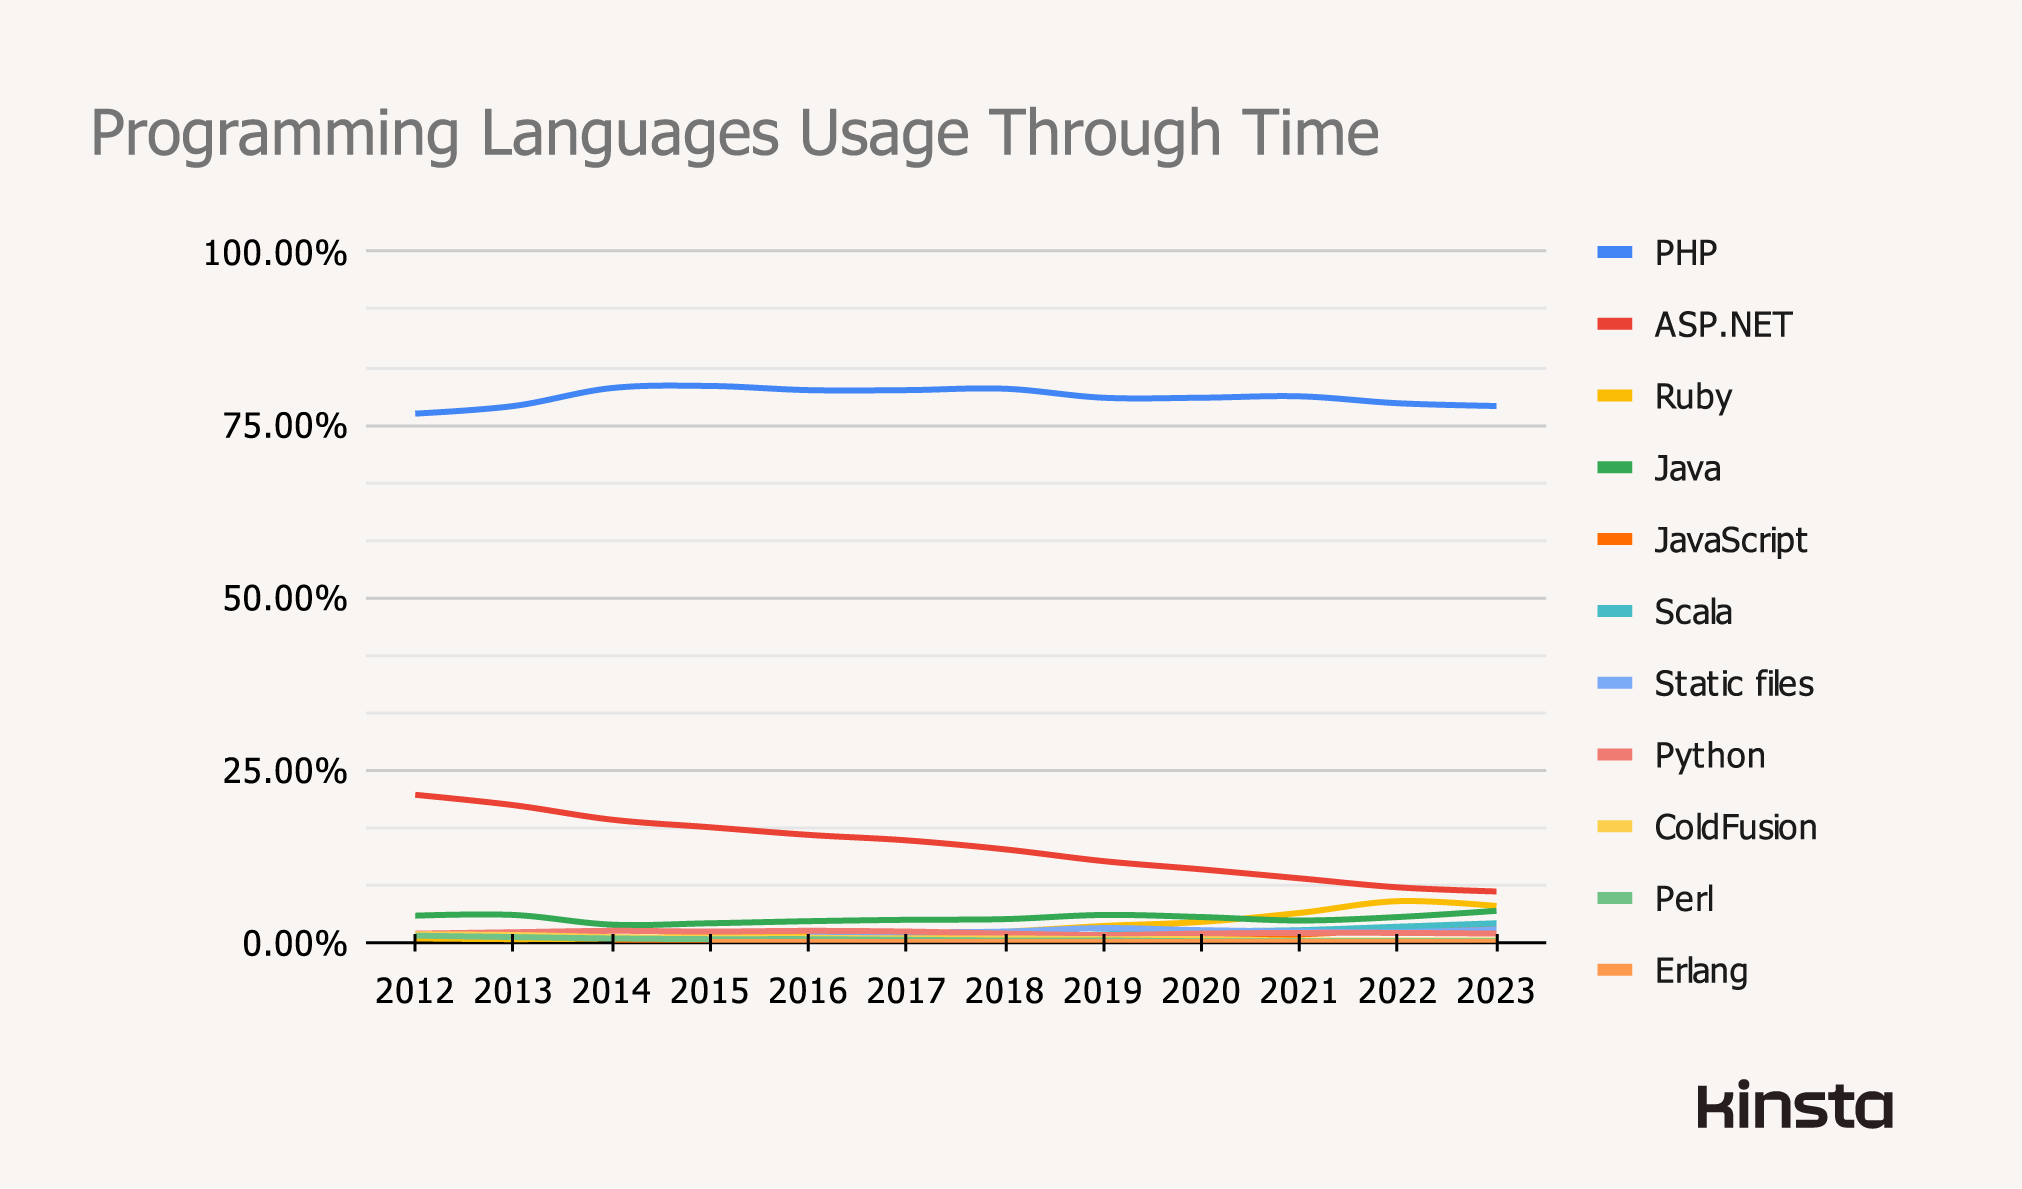 Programming languages usage through time